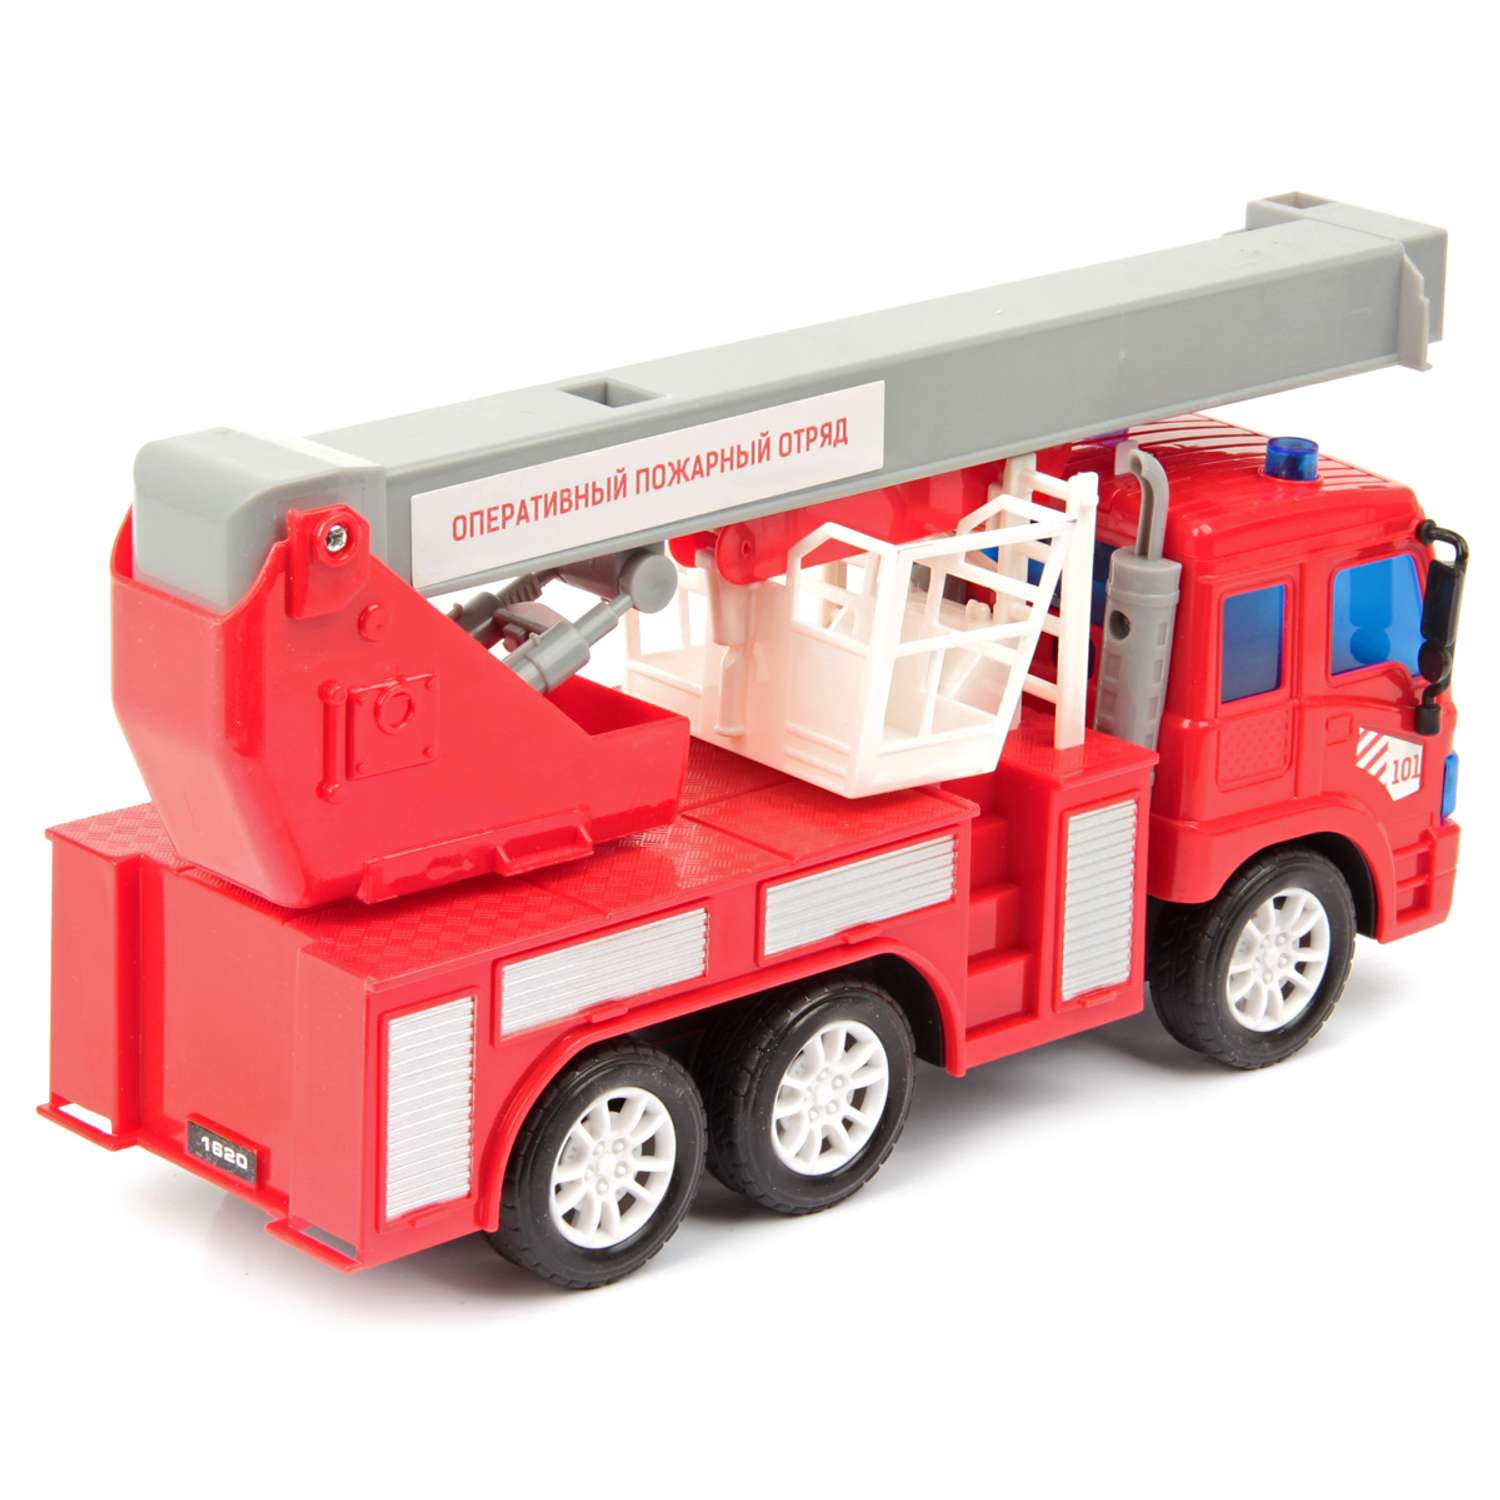 А Машина радиоуправляемая Drift 1:18 грузовик-подъёмник пожарный - фото 2